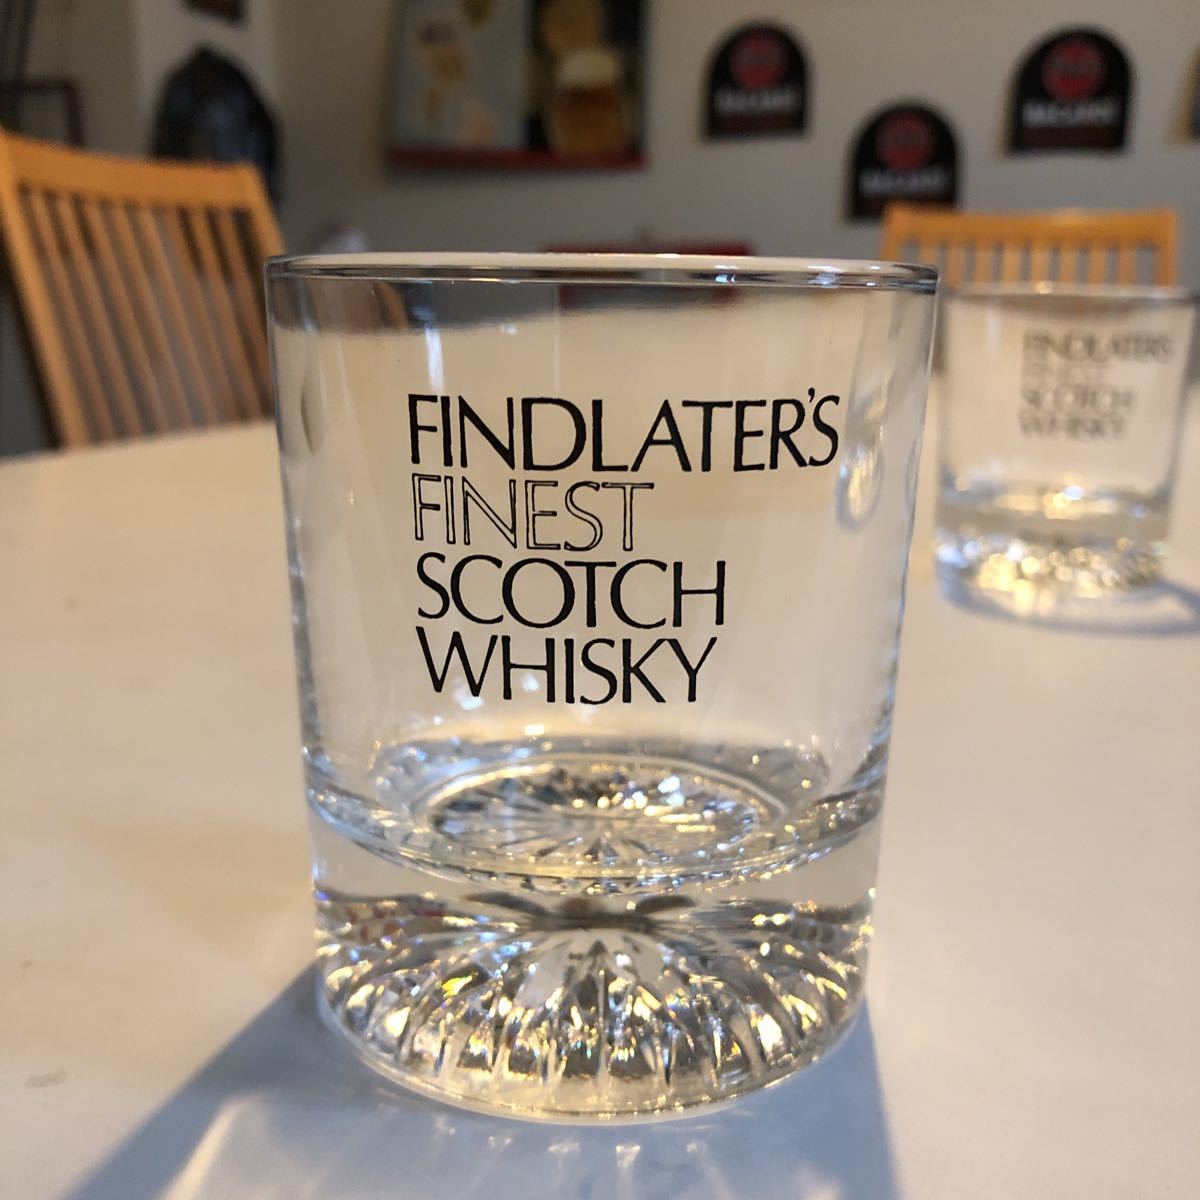  ласты do letter - Scotch виски годы предмет вулканическое стекло 2 шт. комплект ощущение роскоши есть 